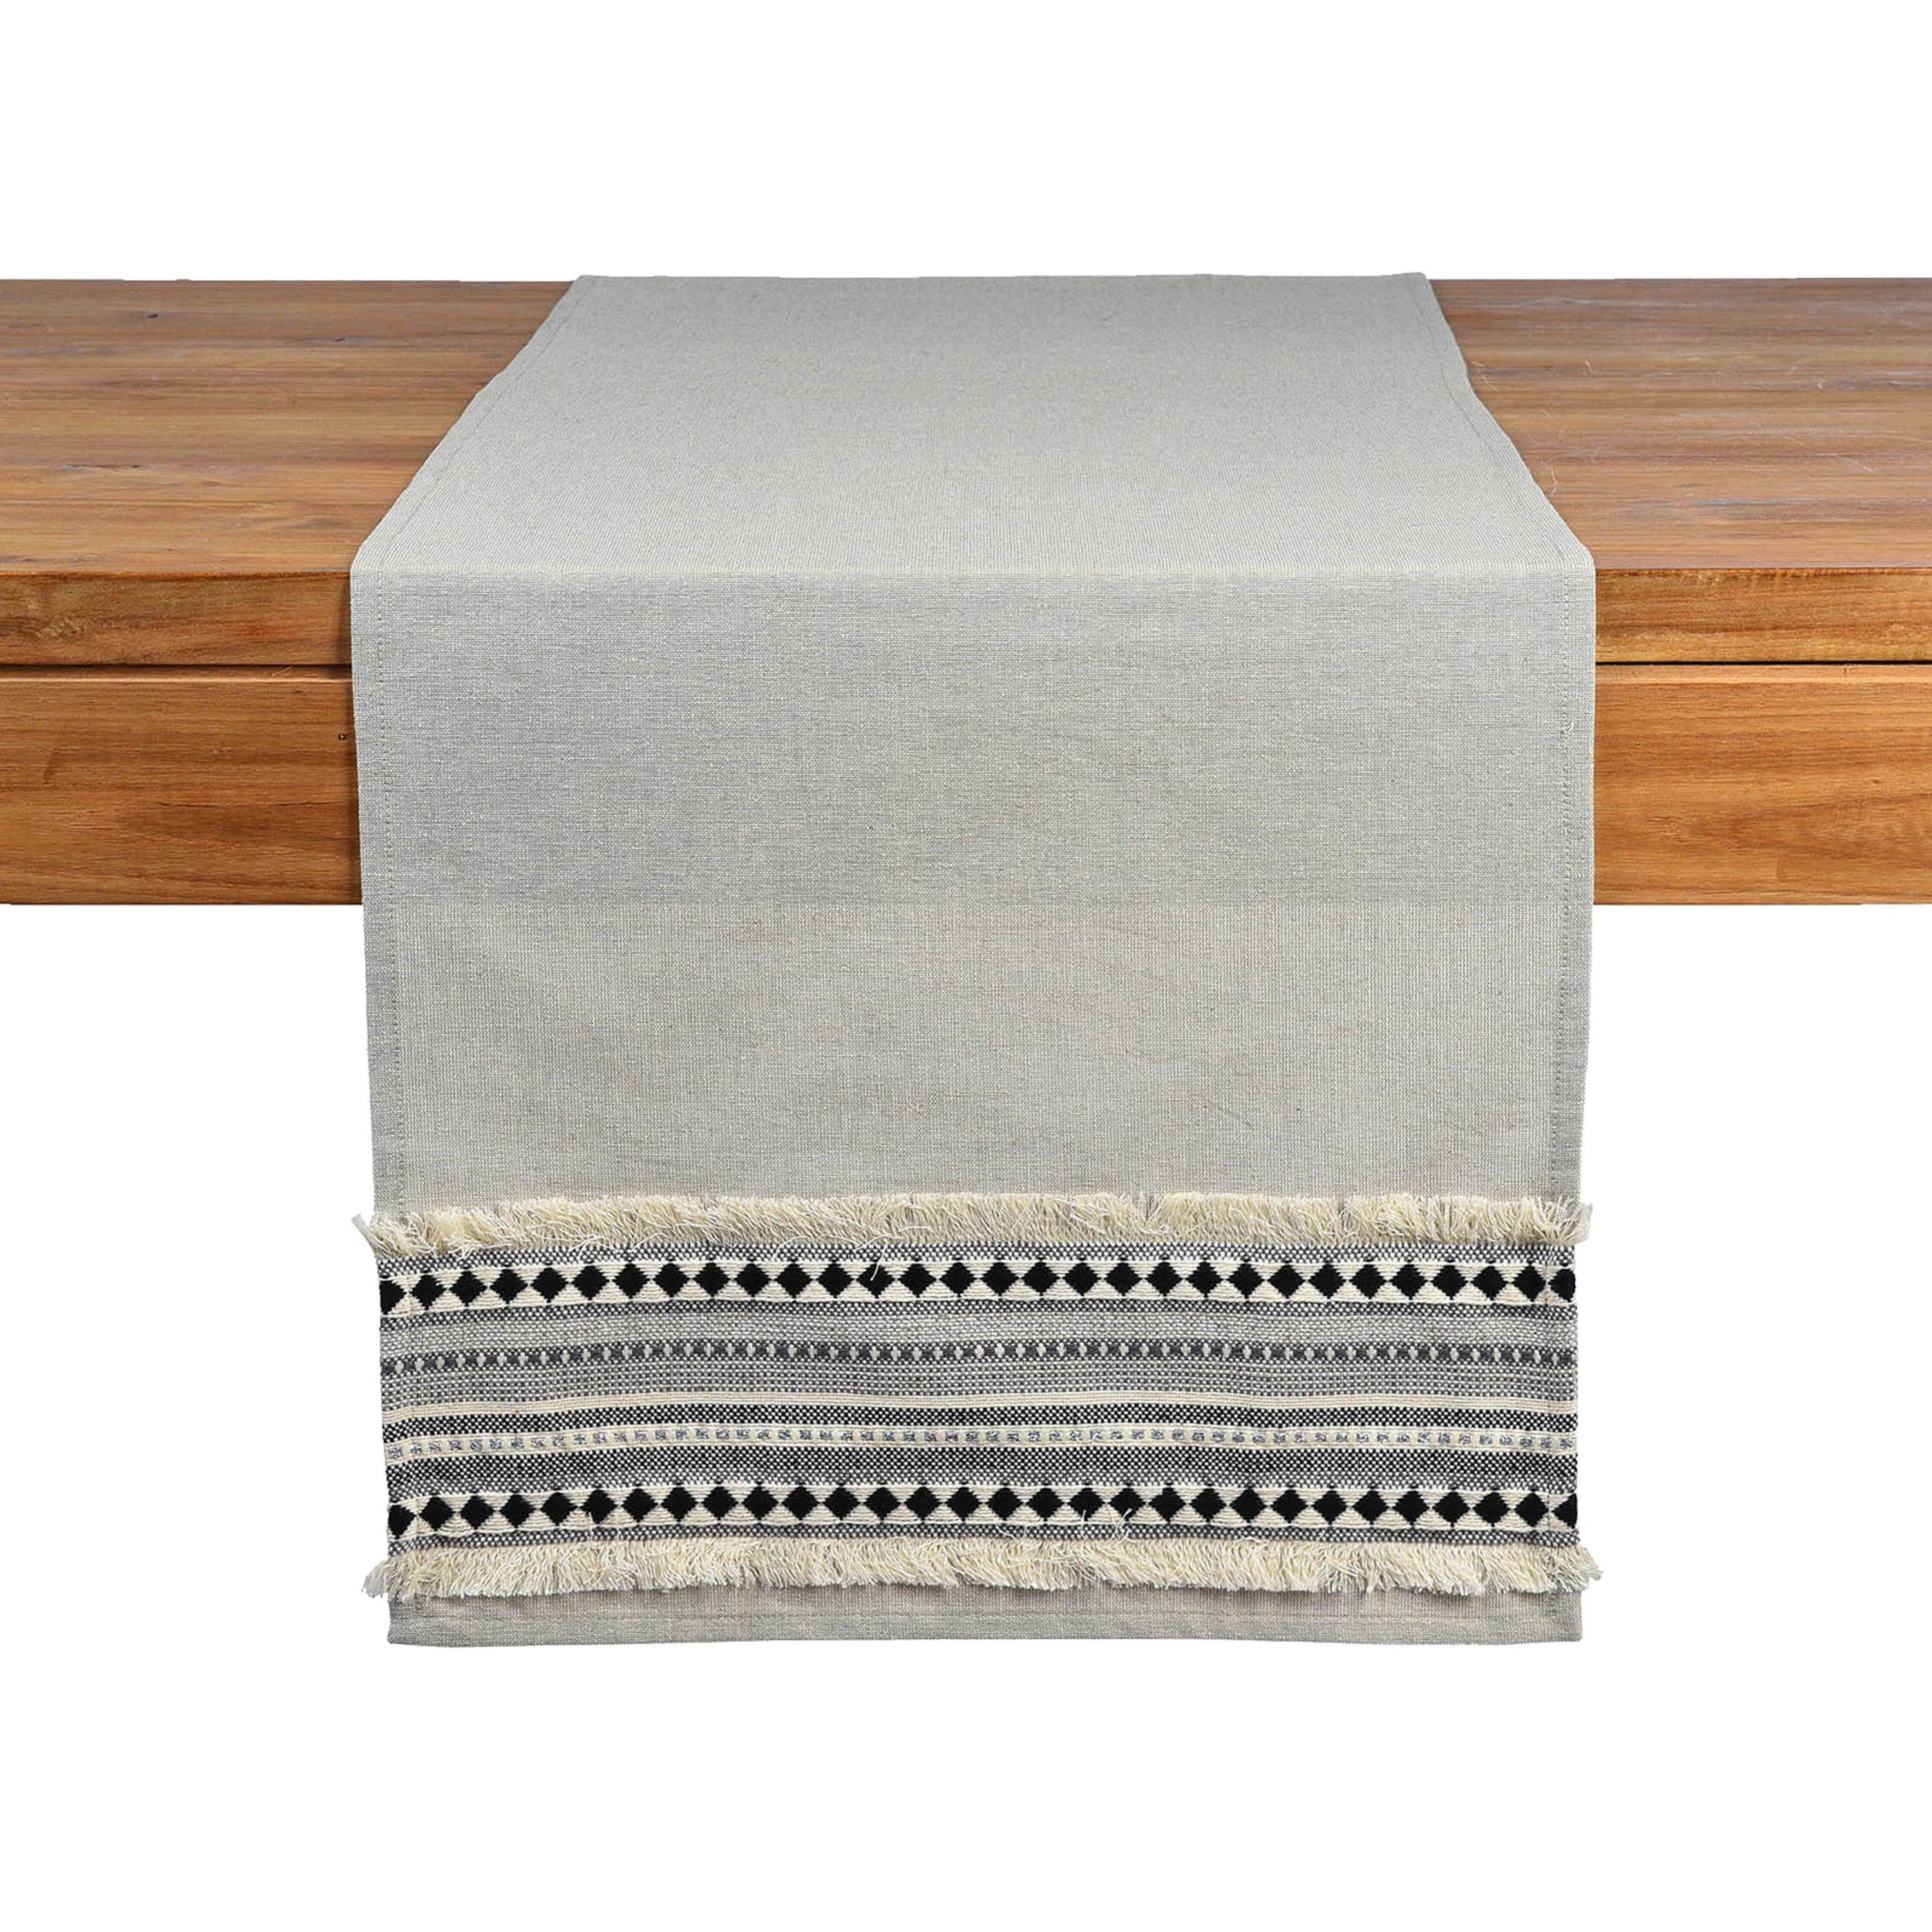 Depot Tischdecke Tischläufer Ethno Style (Packung, 1 Stück Tischläufer),  aus Baumwolle, Lurex, L 150 Zentimeter, B 40 Zentimeter